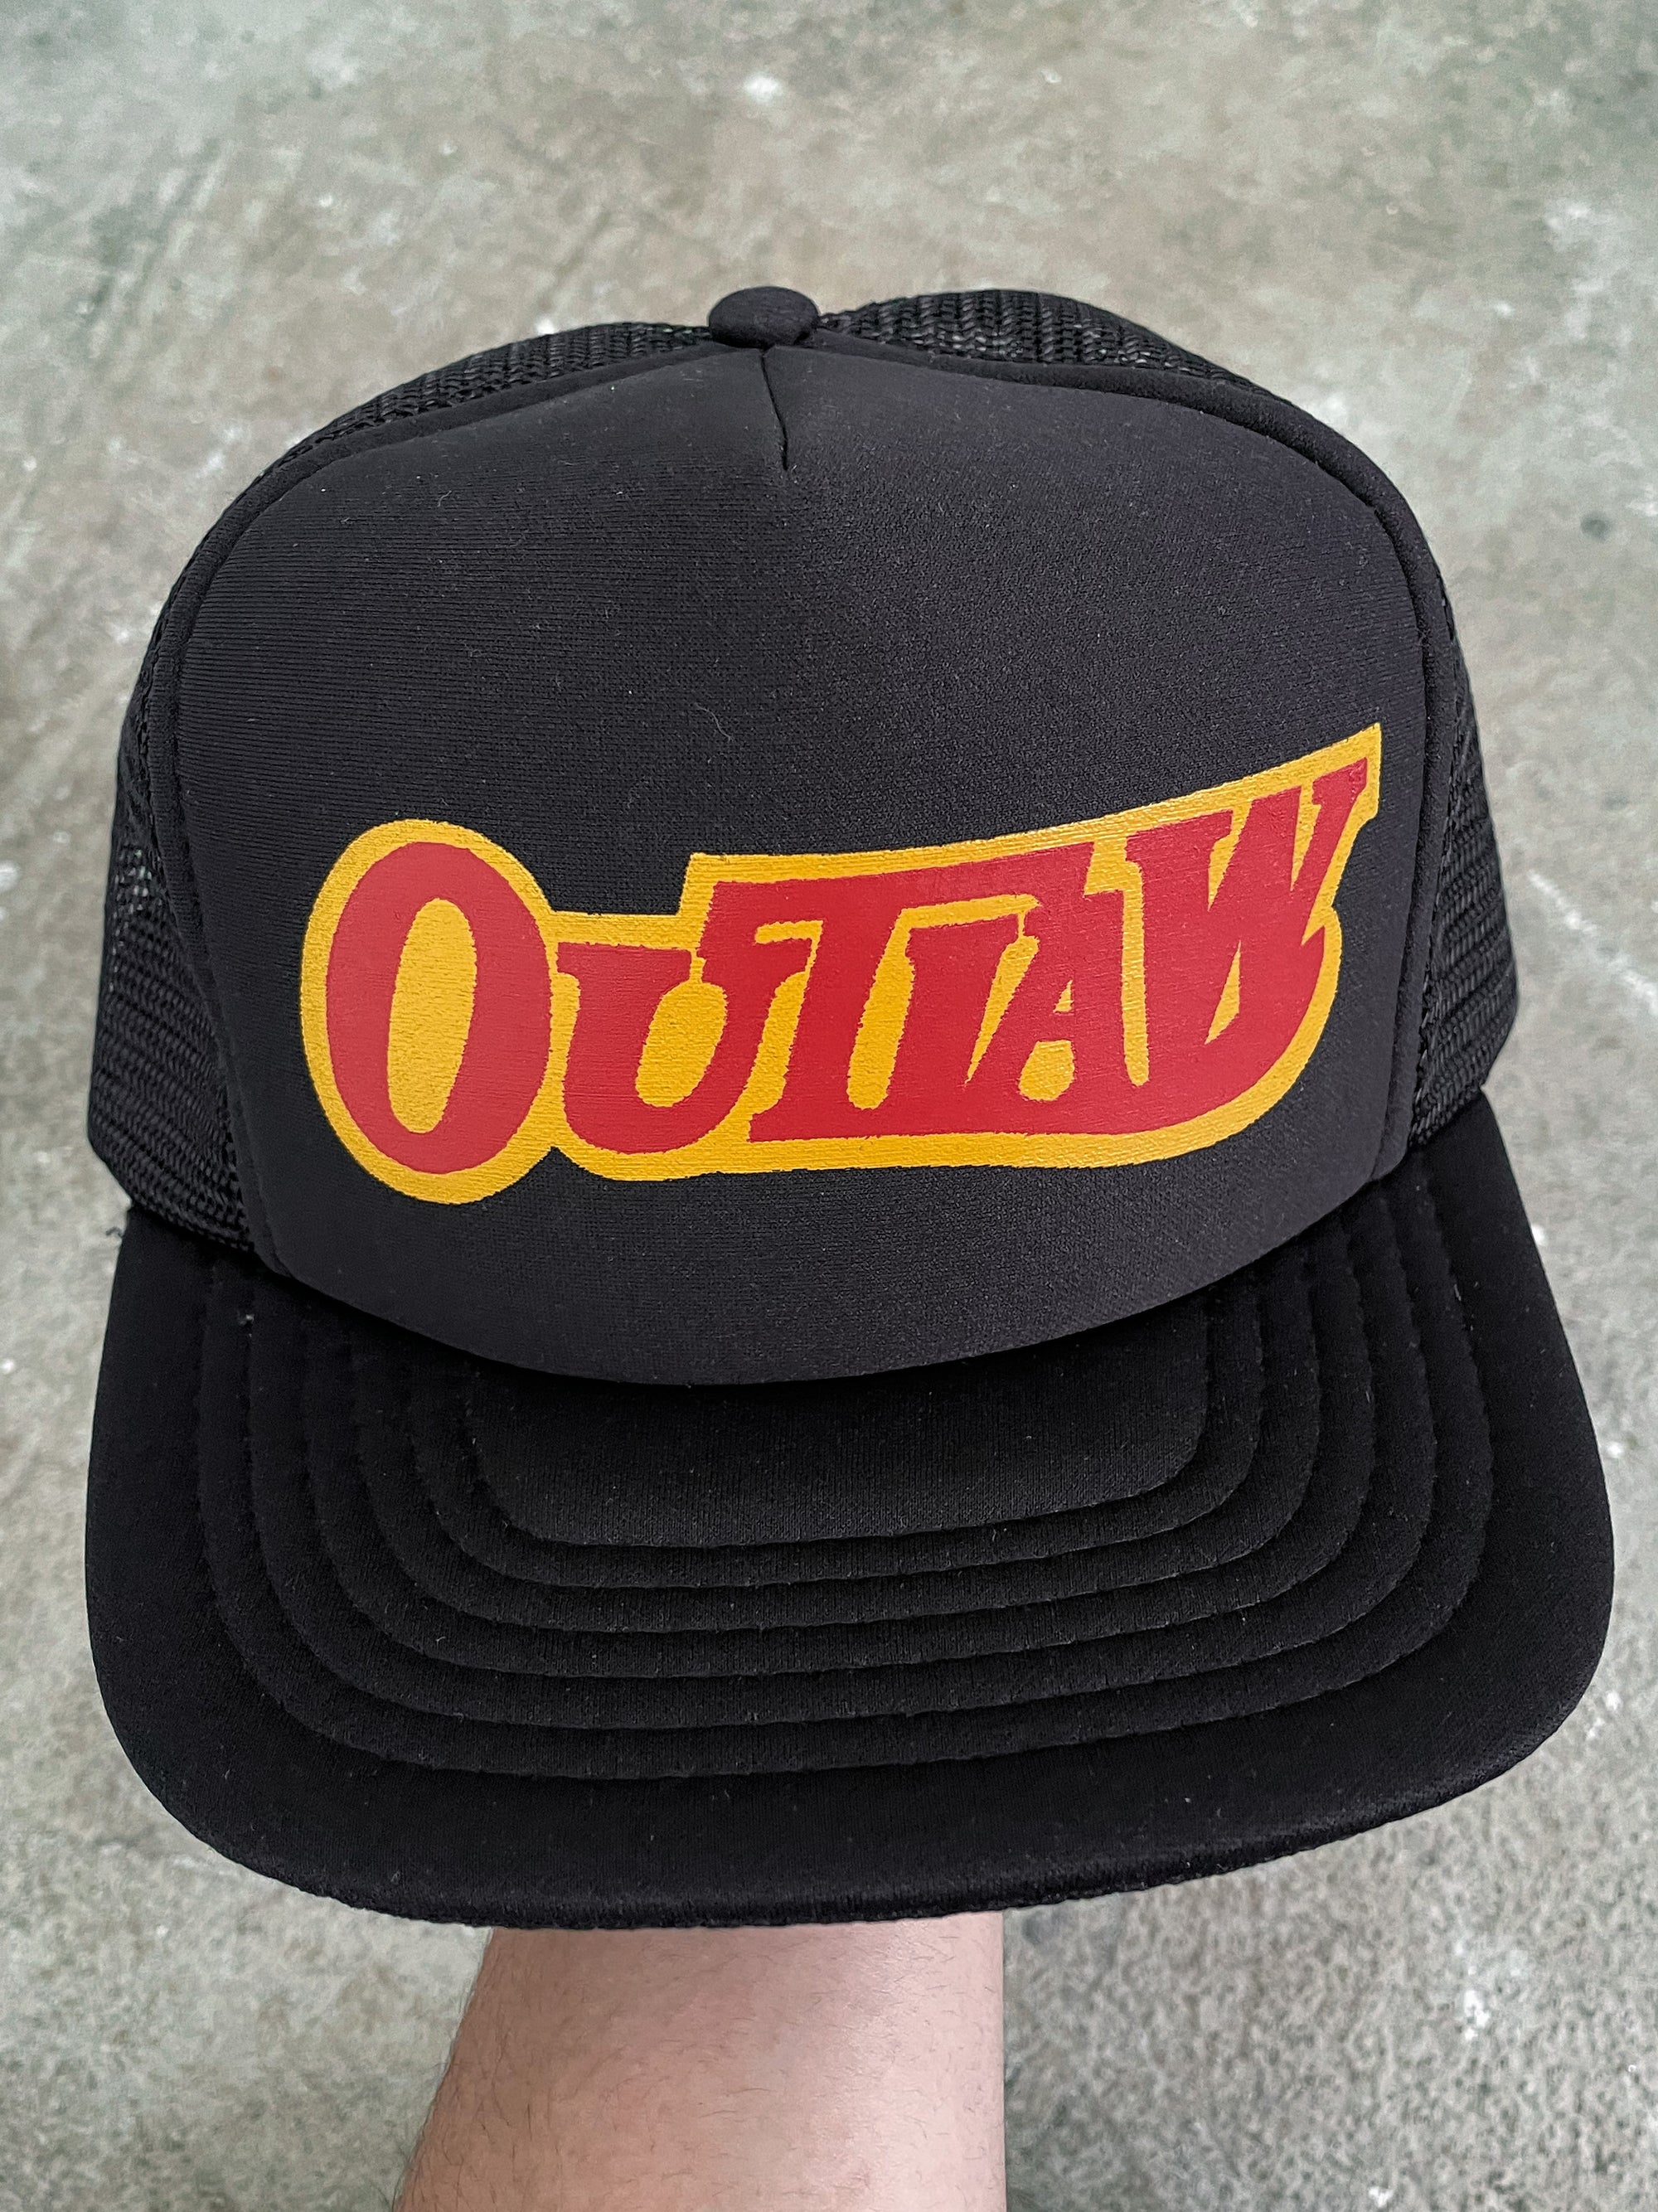 1980s “Outlaw” Trucker Hat